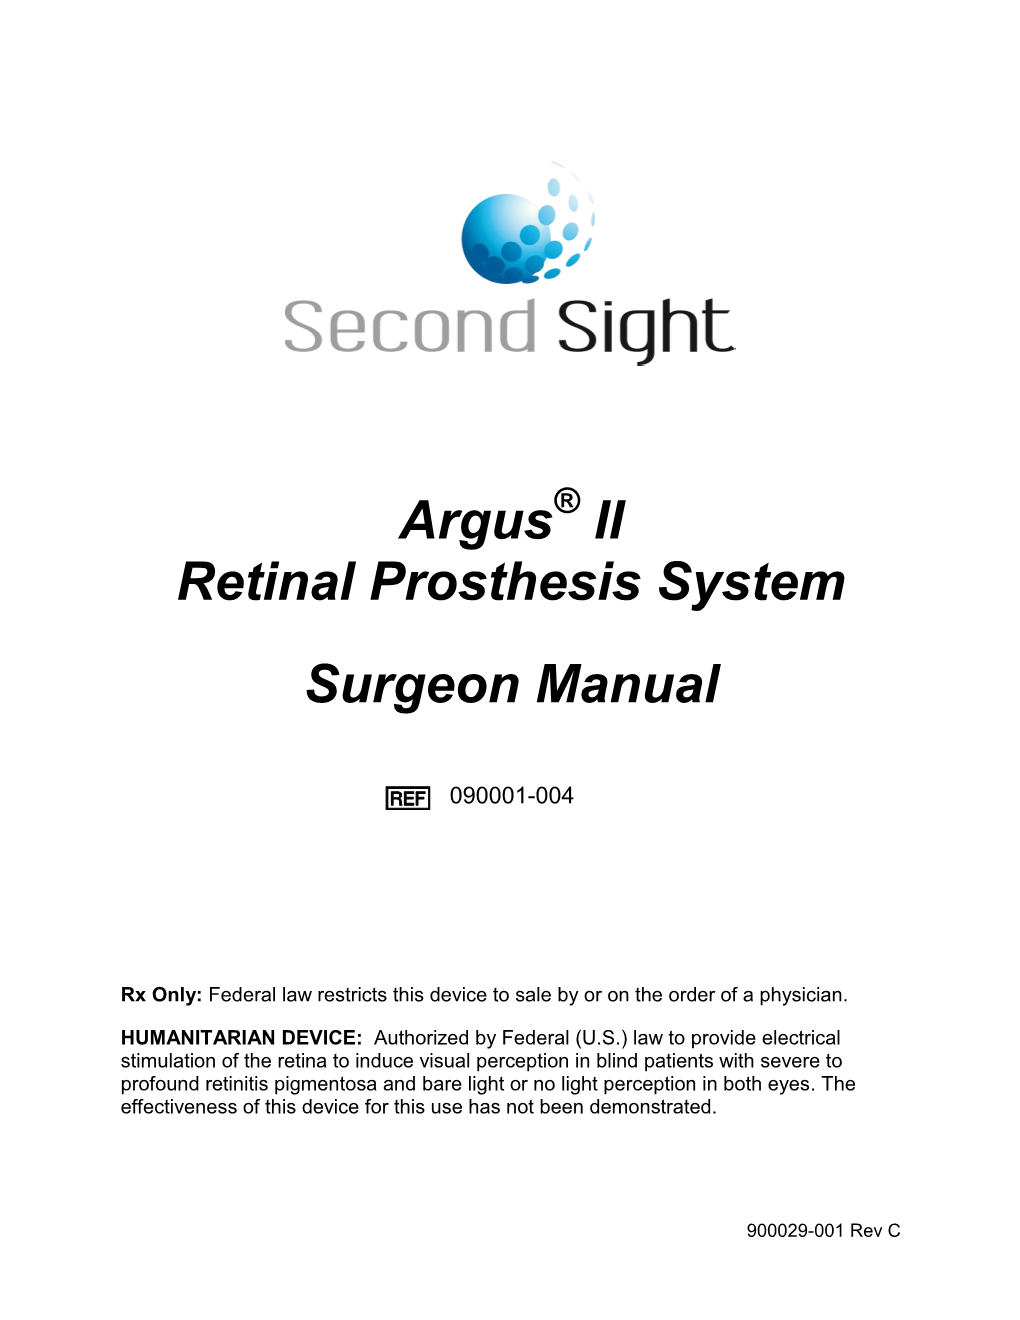 Argus II Retinal Prosthesis System Surgeon Manual